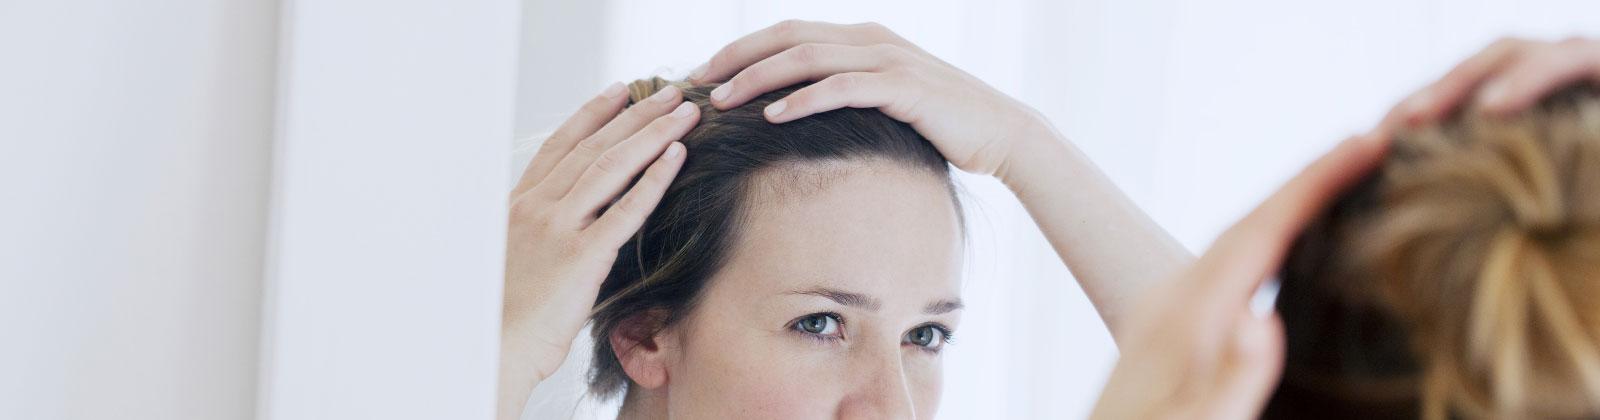 Mesotherapie gegen Haarausfall